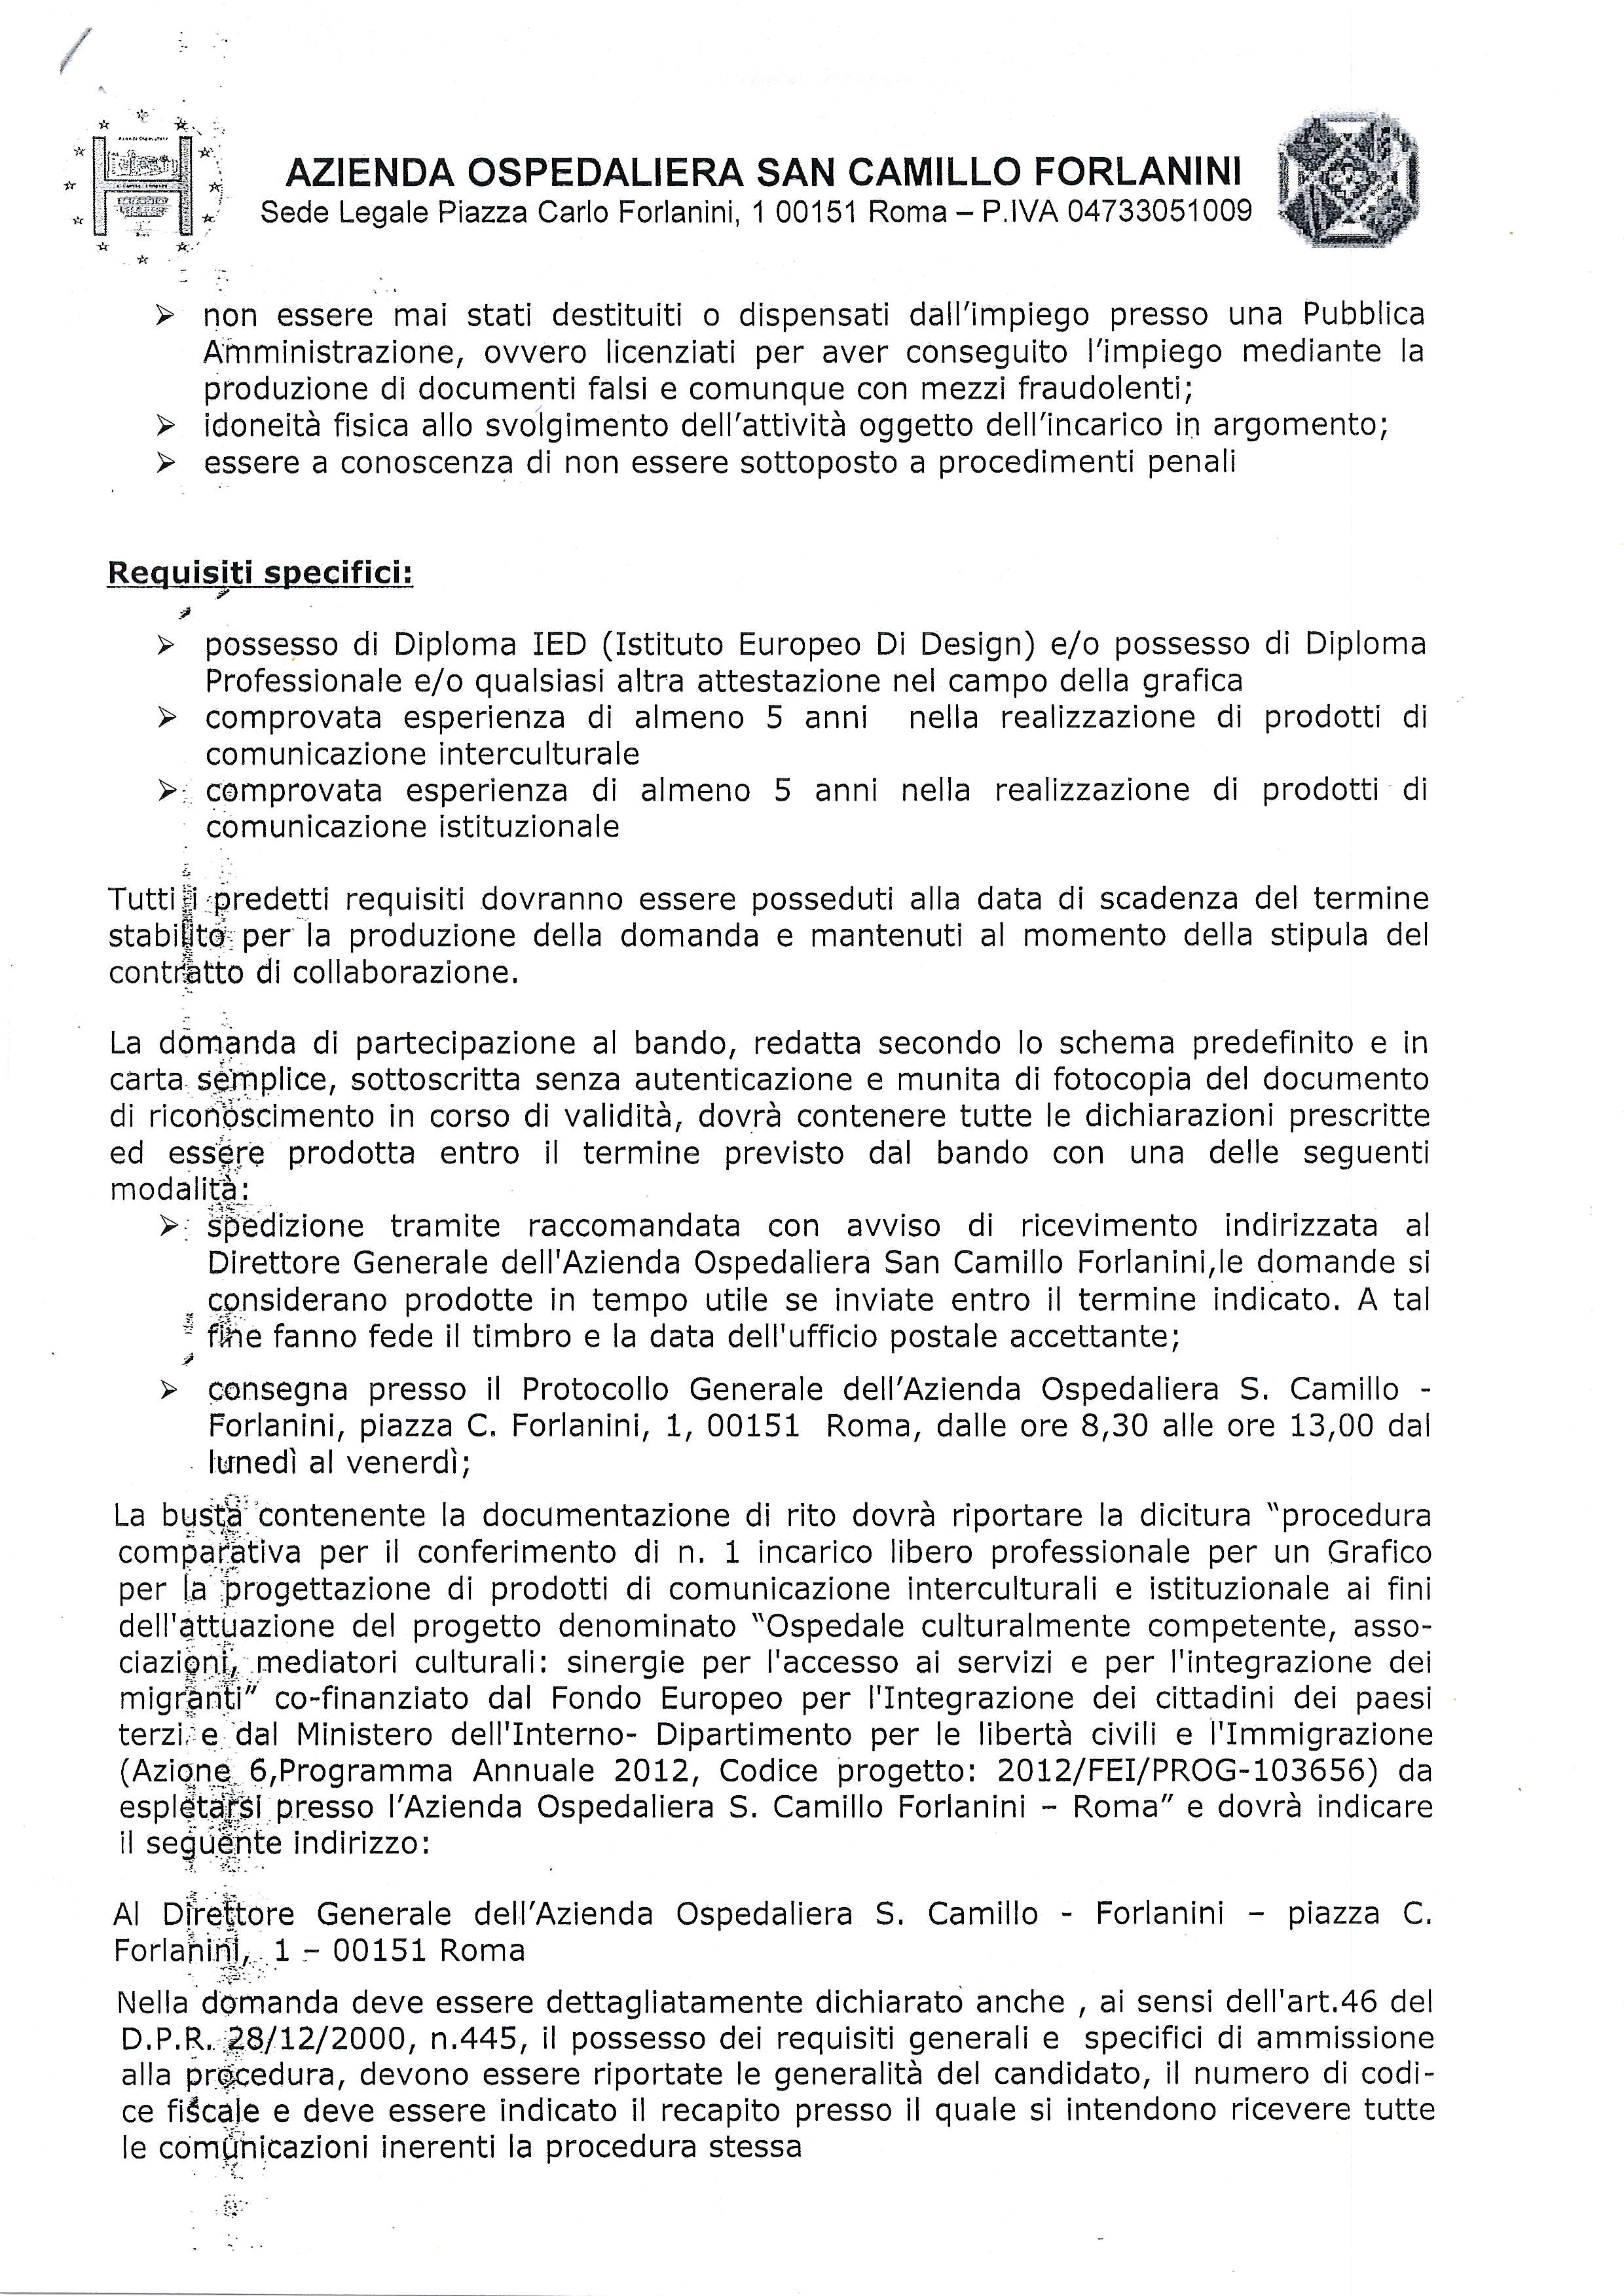 AZENDA OSPEDALERA SAN CAMLLO FORLANN Sede LegalePiazza Carlo Forlanini, 00151 Roma - P.